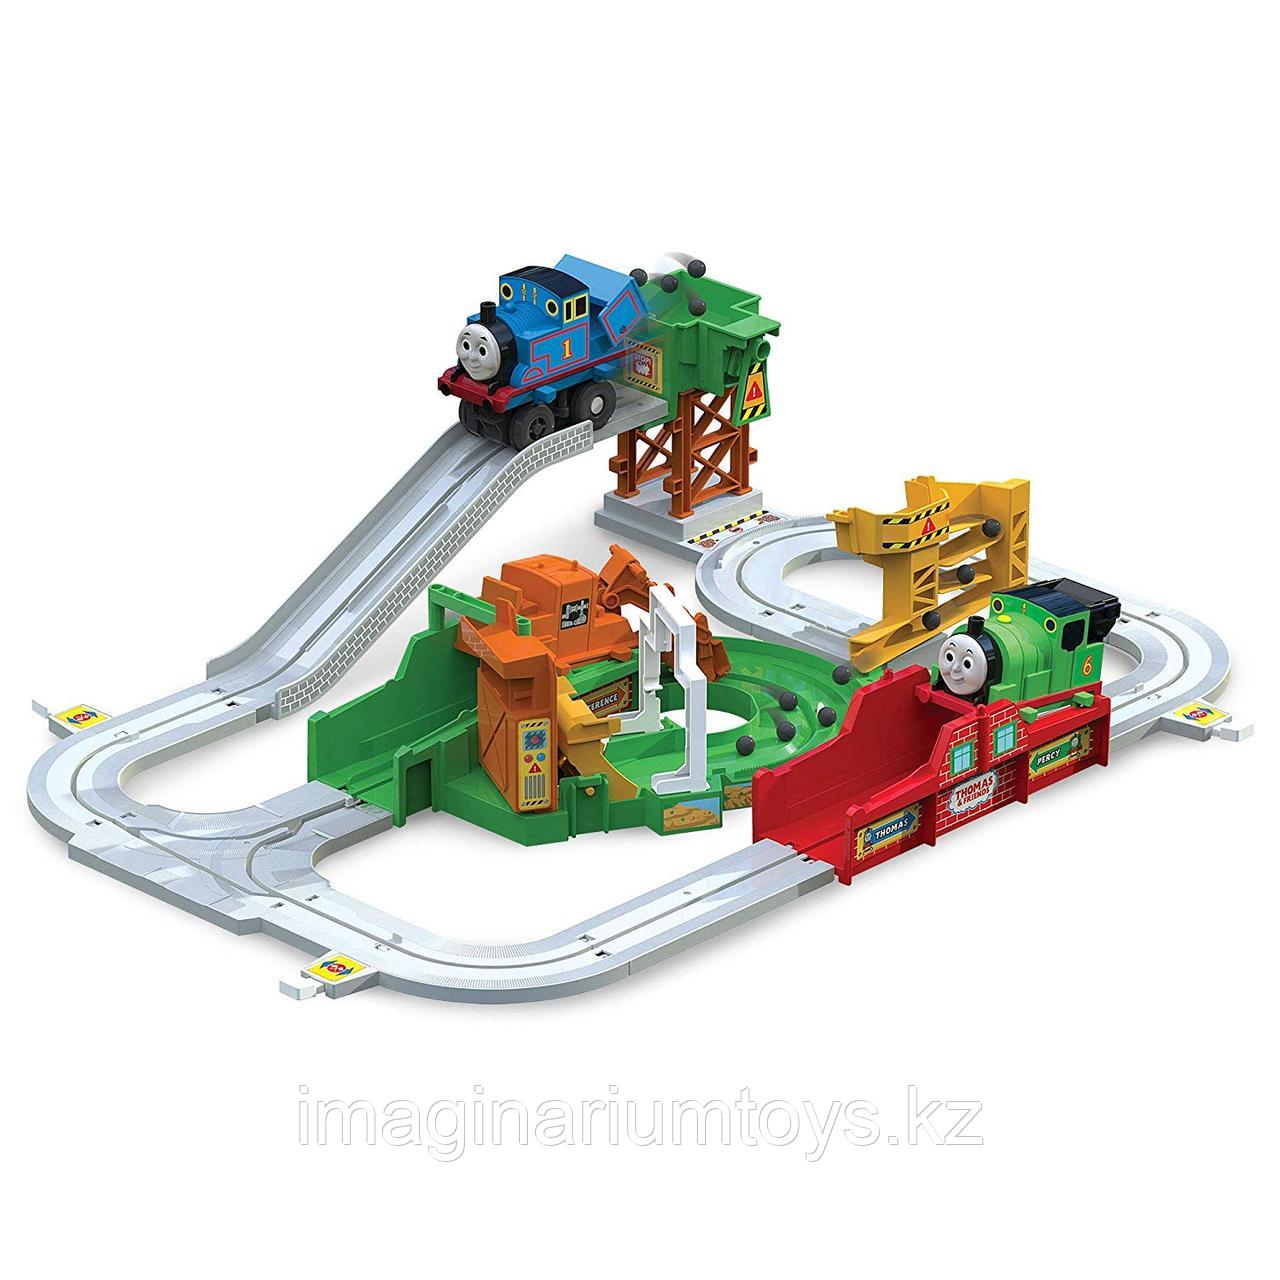 Детская железная дорога с паровозиком Томасом, фото 1